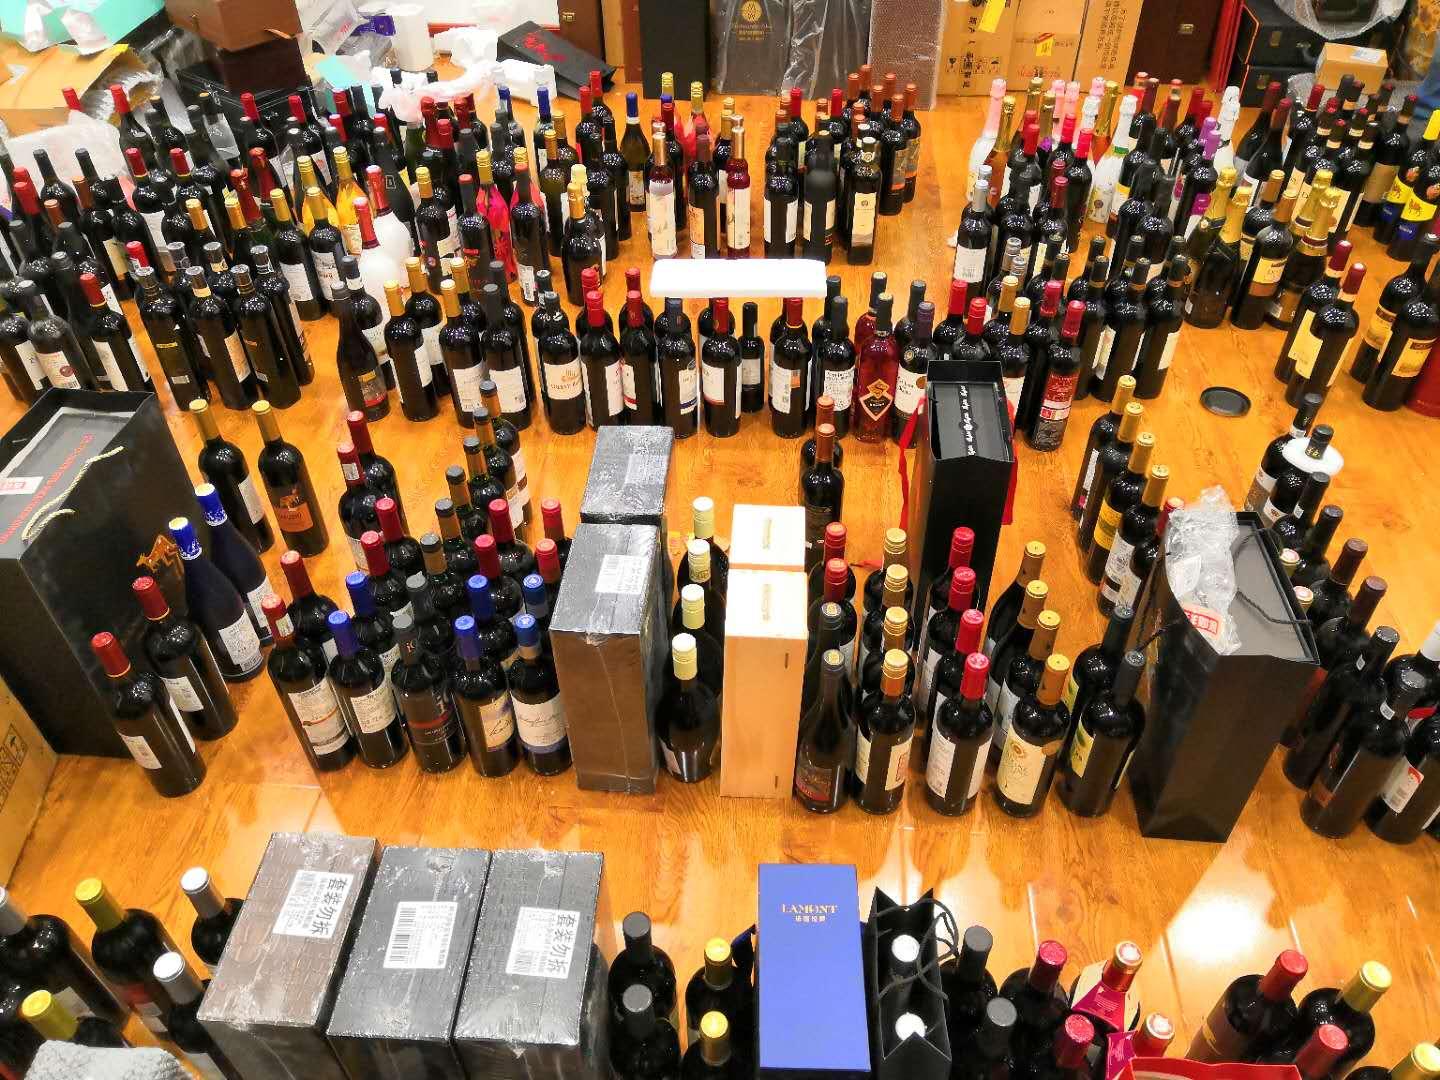 三大协会发布百元葡萄酒品鉴分析结果 新评价